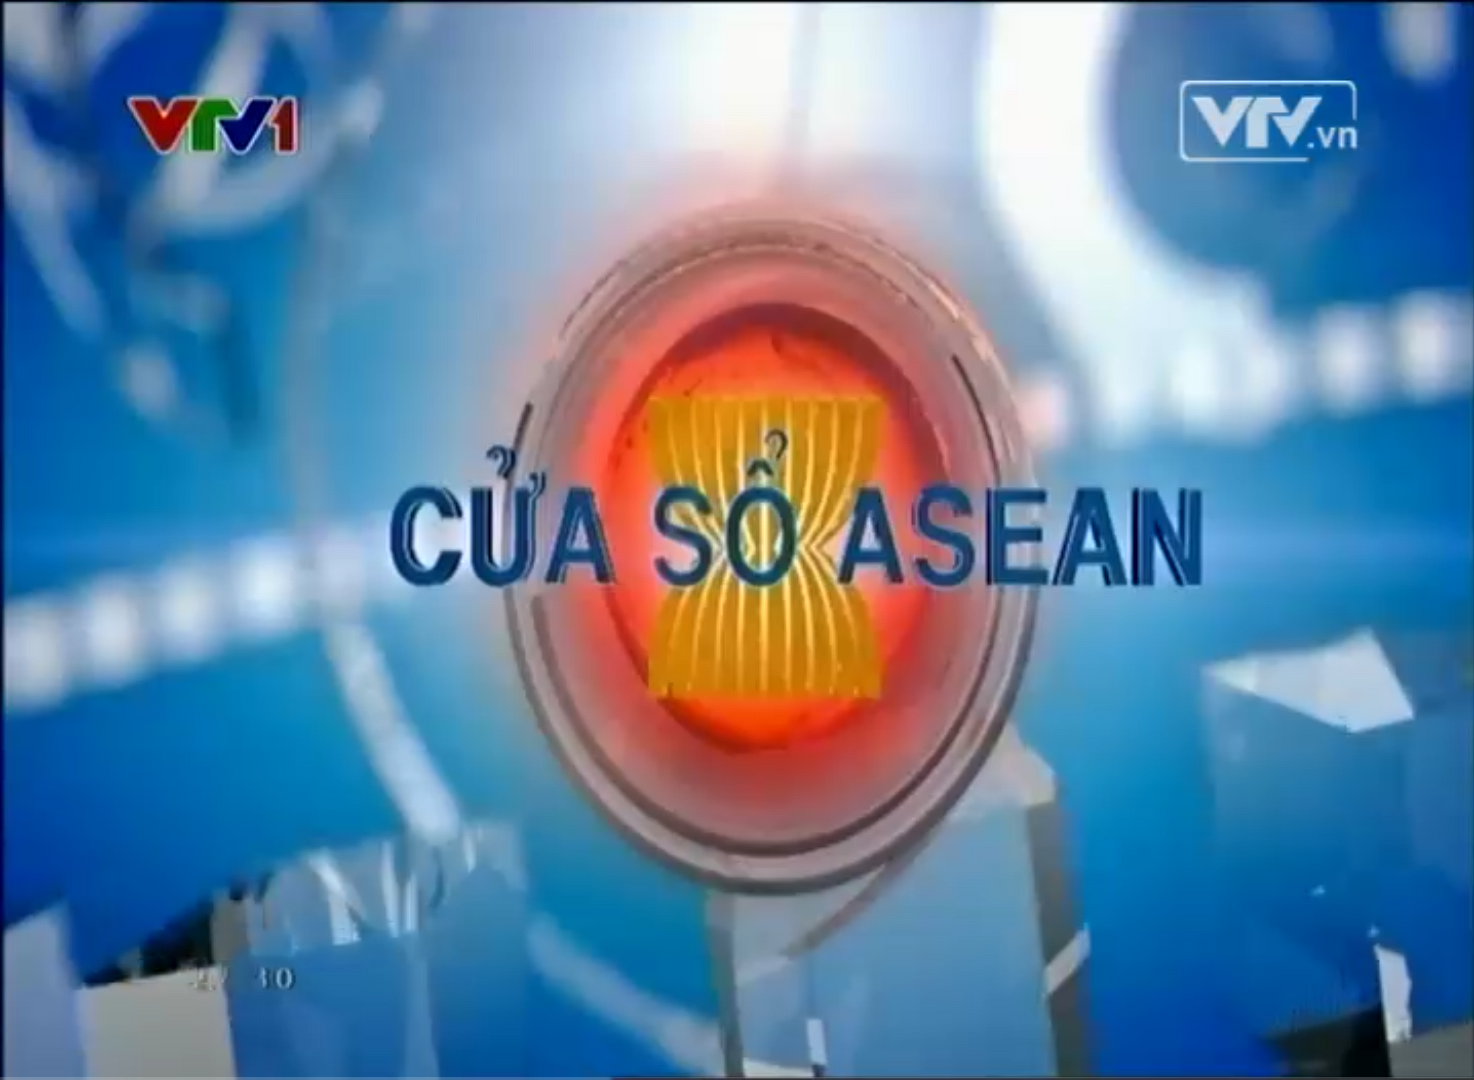 Quảng bá thương hiệu ASEAN: Những sản phẩm của các quốc gia thành viên ASEAN đã và đang được quảng bá rộng rãi trên thế giới. Từ các sản phẩm thực phẩm, sức khỏe, thể thao đến thời trang hay thiết bị công nghệ. Hãy xem hình ảnh để tìm hiểu về những sản phẩm đang giúp nâng cao thương hiệu ASEAN trên thế giới.